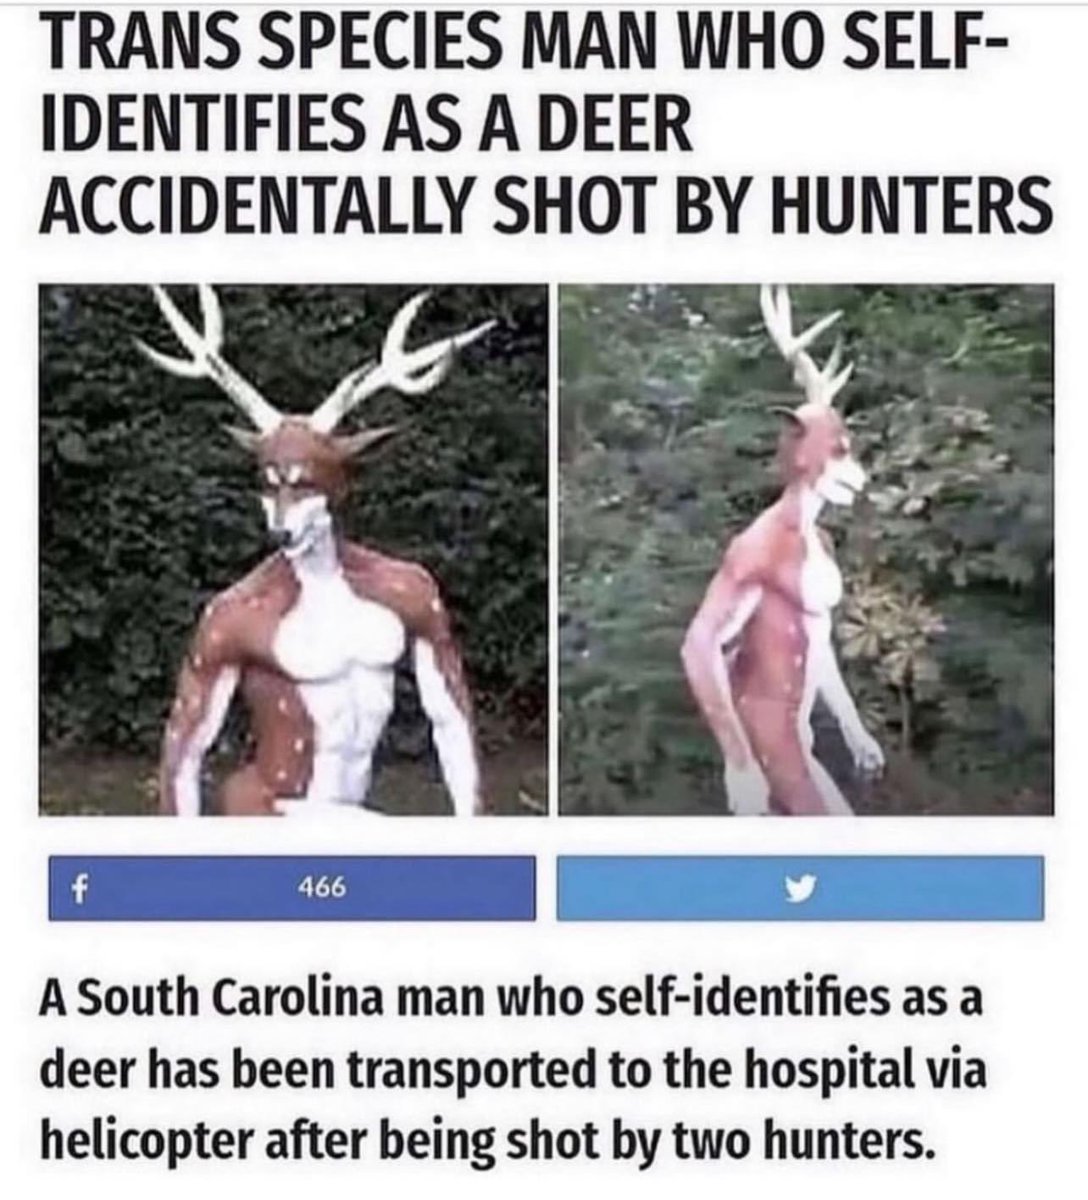 Drame du transgenrisme.
Un homme qui s’identifie à un cerf s’est fait tirer dessus par des chasseurs.
Mais selon leur propre théorie (= si on s’identifie à un truc, c’est qu’on l’est) , les chasseurs ne devraient pas avoir d’ennuis puisque la chasse était ouverte.